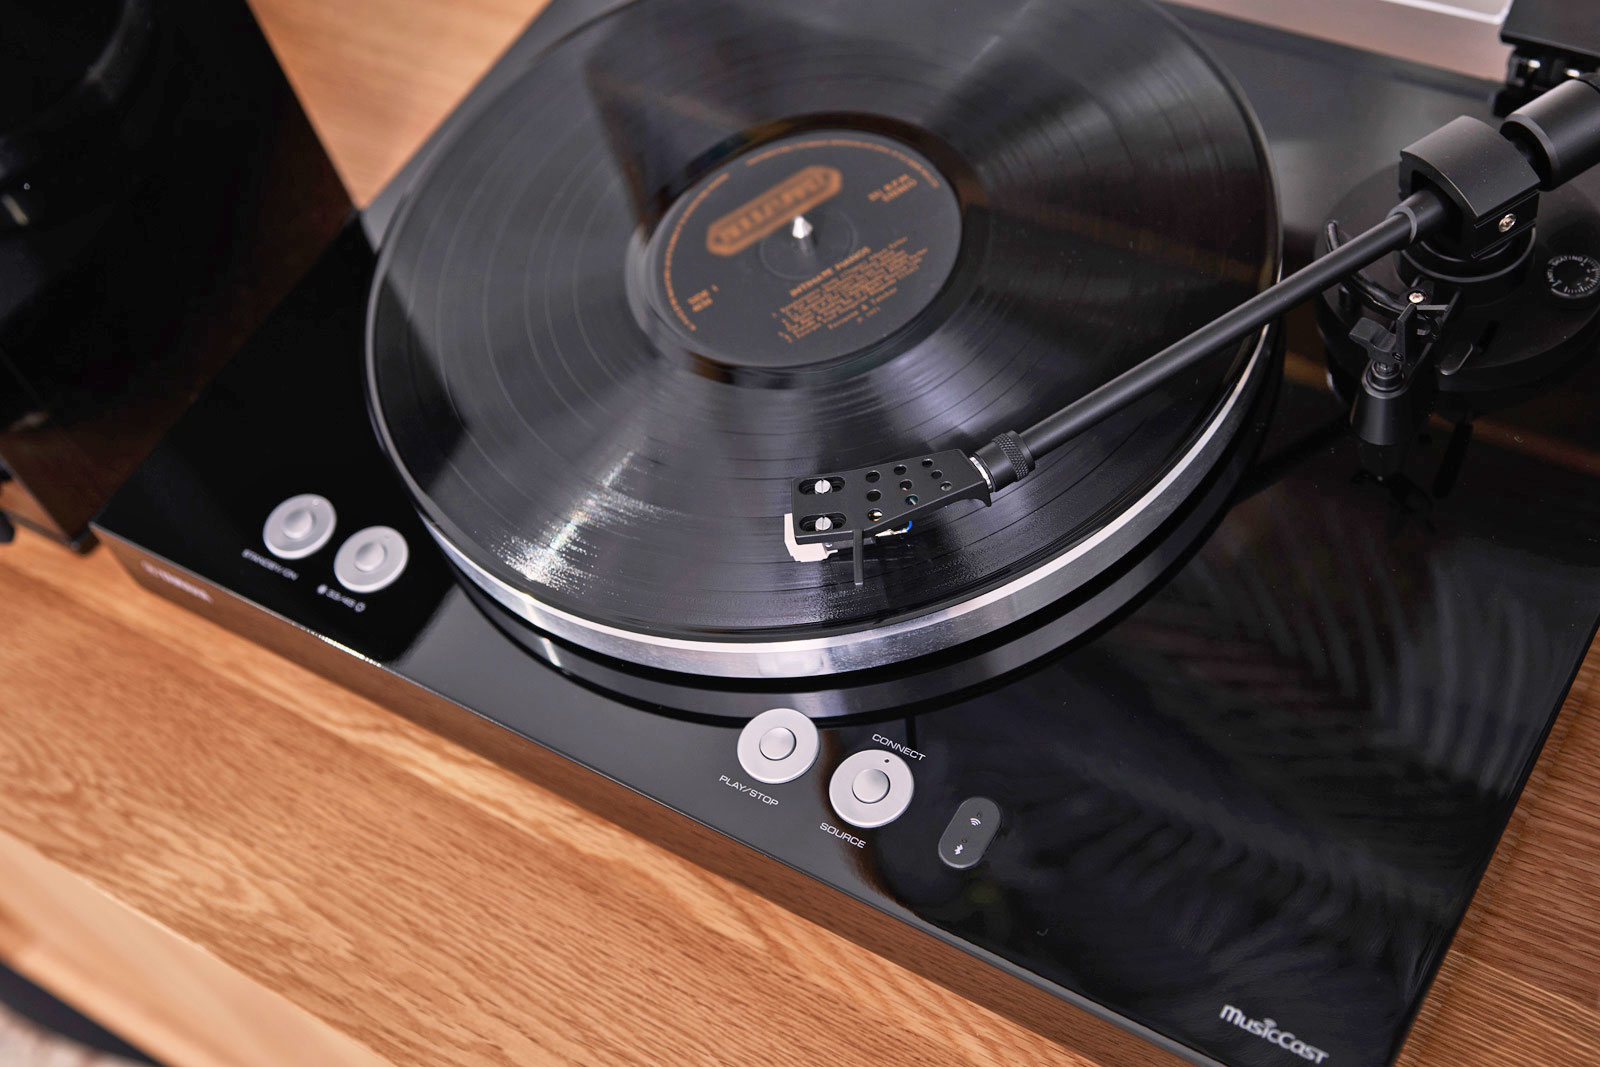 MusicCast Vinyl 500: Nostalji müzik en son teknolojiyle buluşuyor